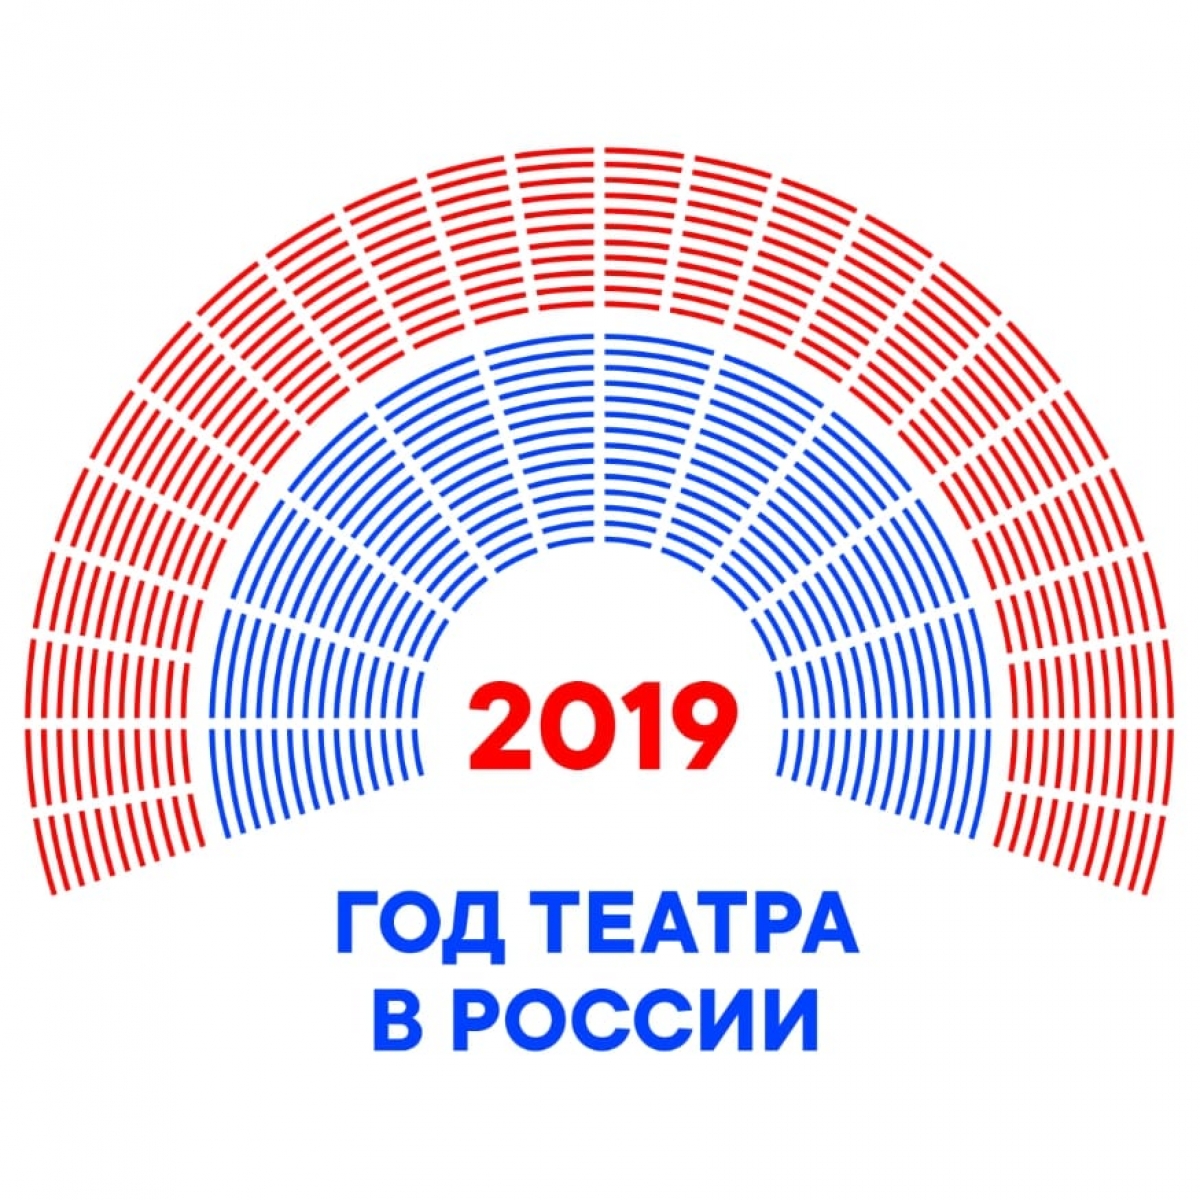 2019 god emblema